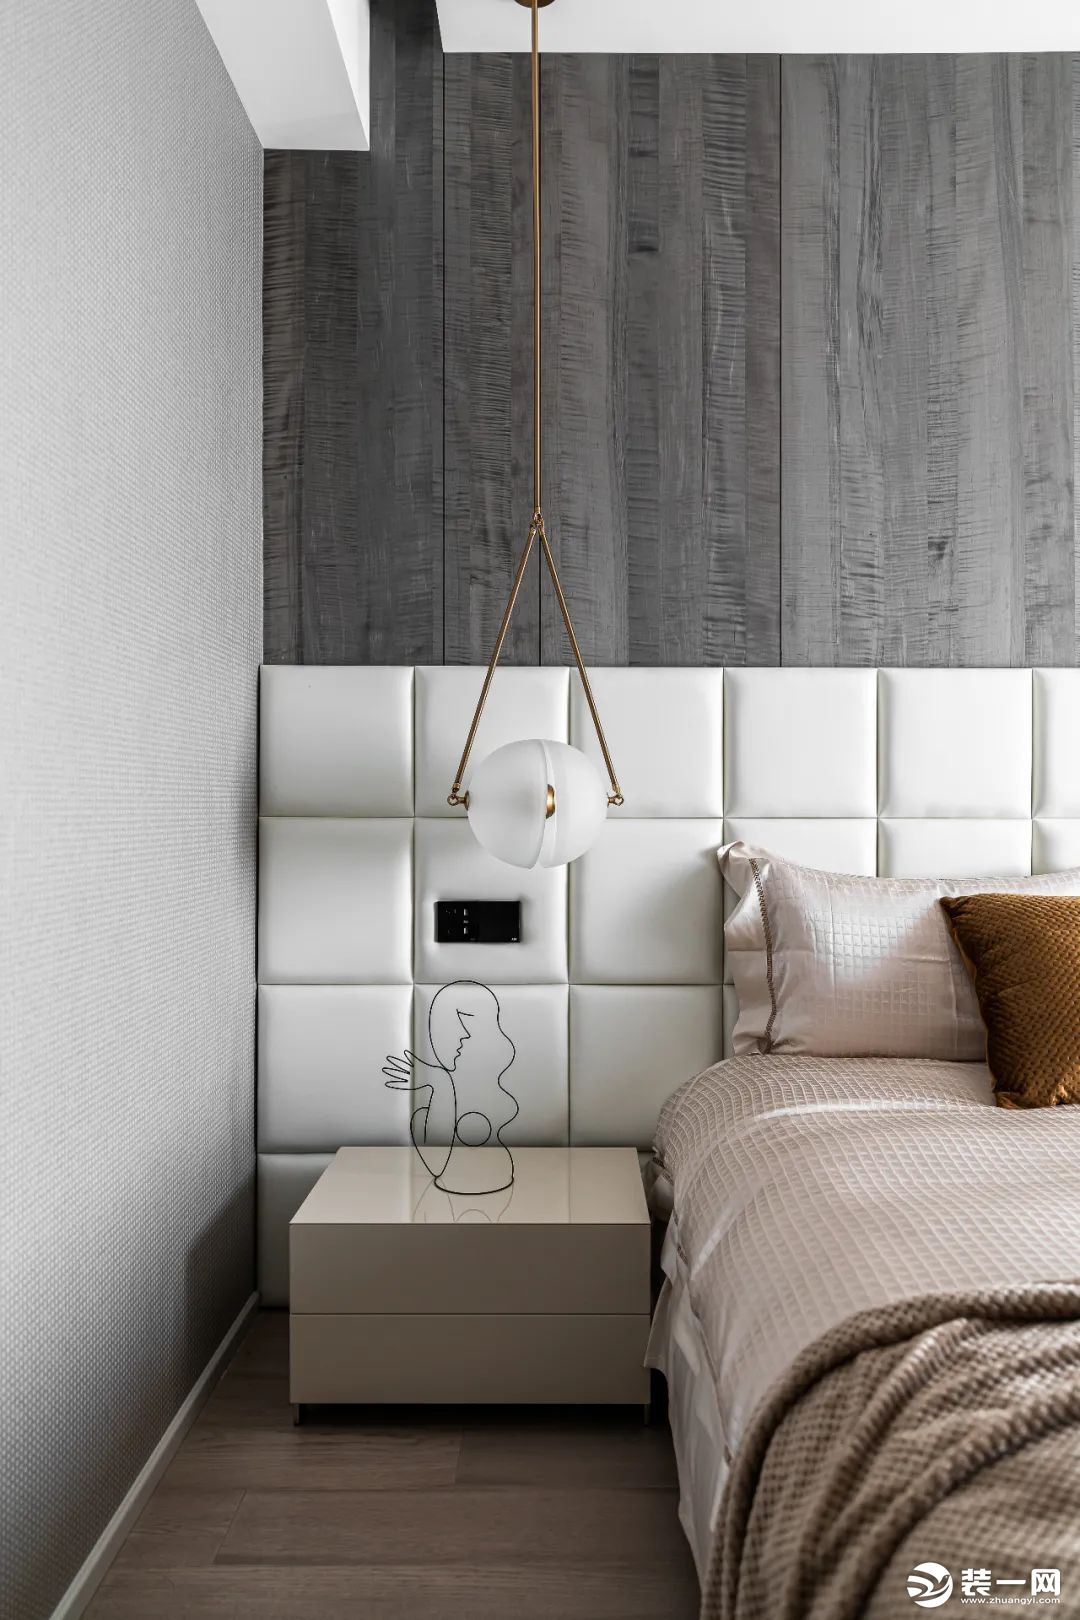 主卧，床头背景墙采用浅色软包+深色木地板上墙的组合，尽显高级质感。床尾墙面打造了衣柜+化妆台+电视柜